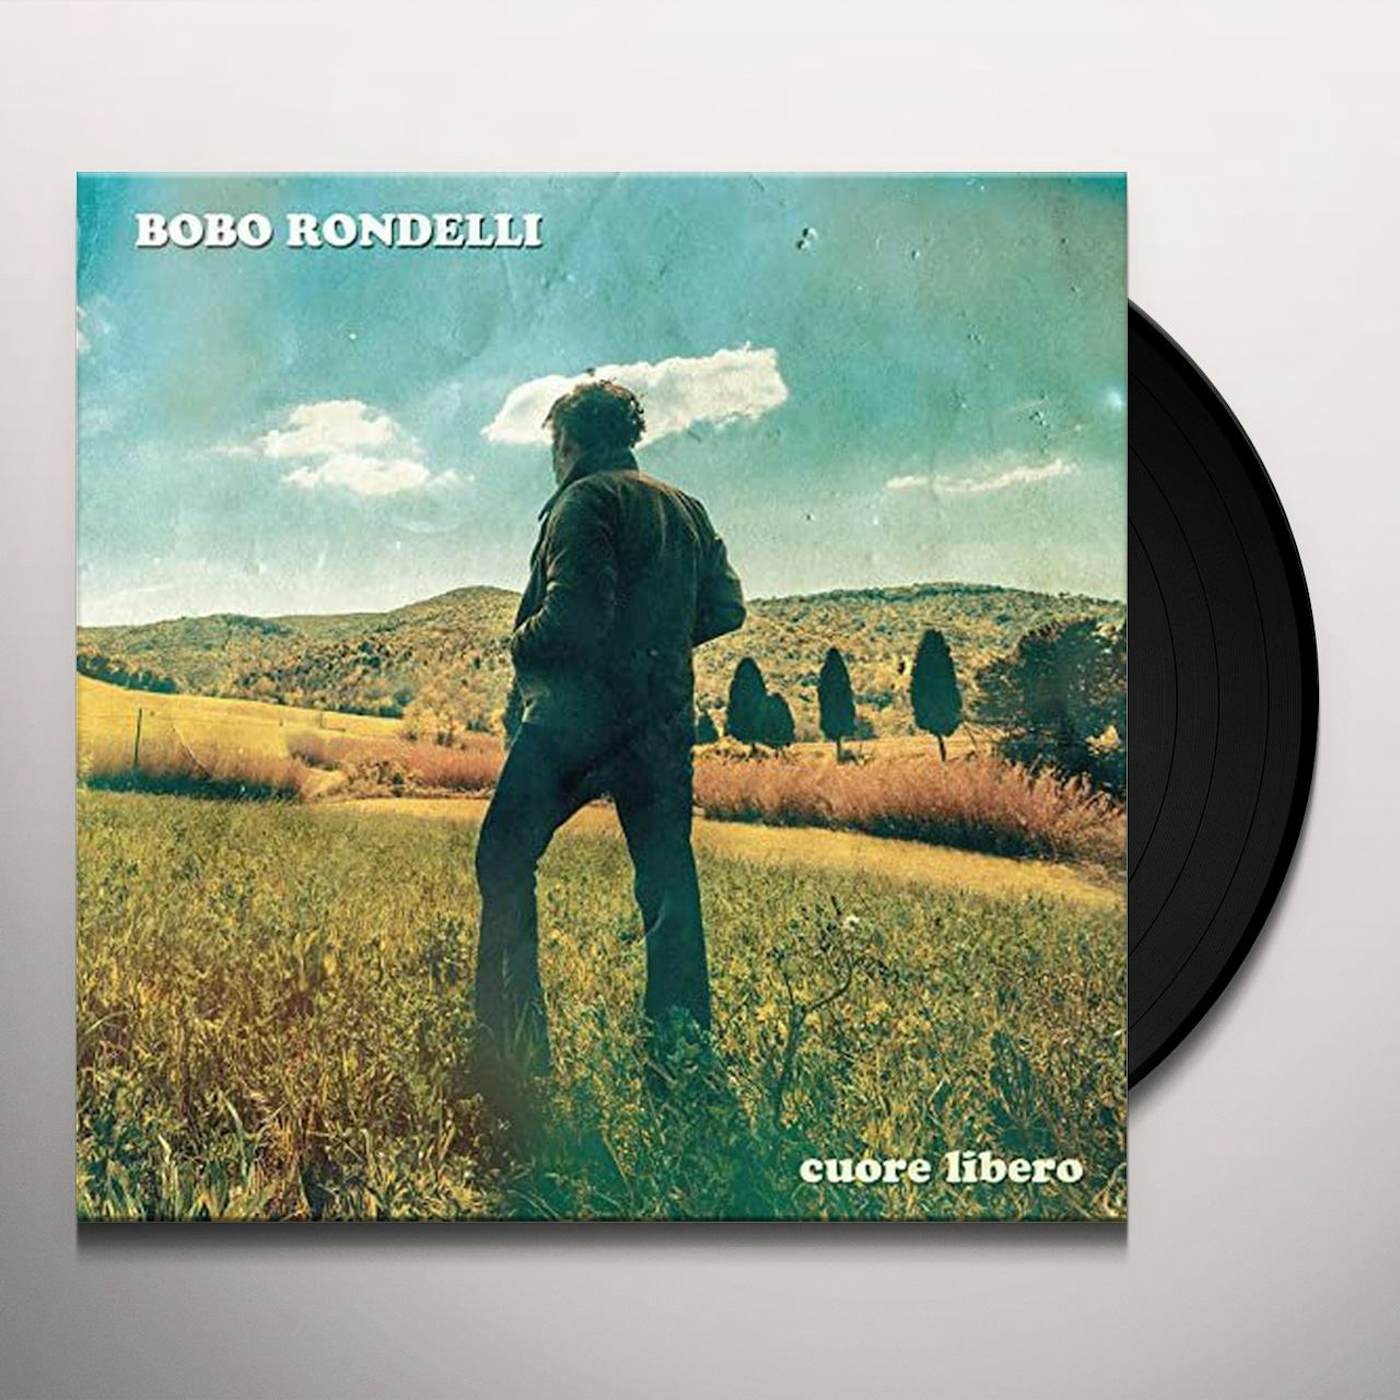 Bobo Rondelli Cuore libero Vinyl Record